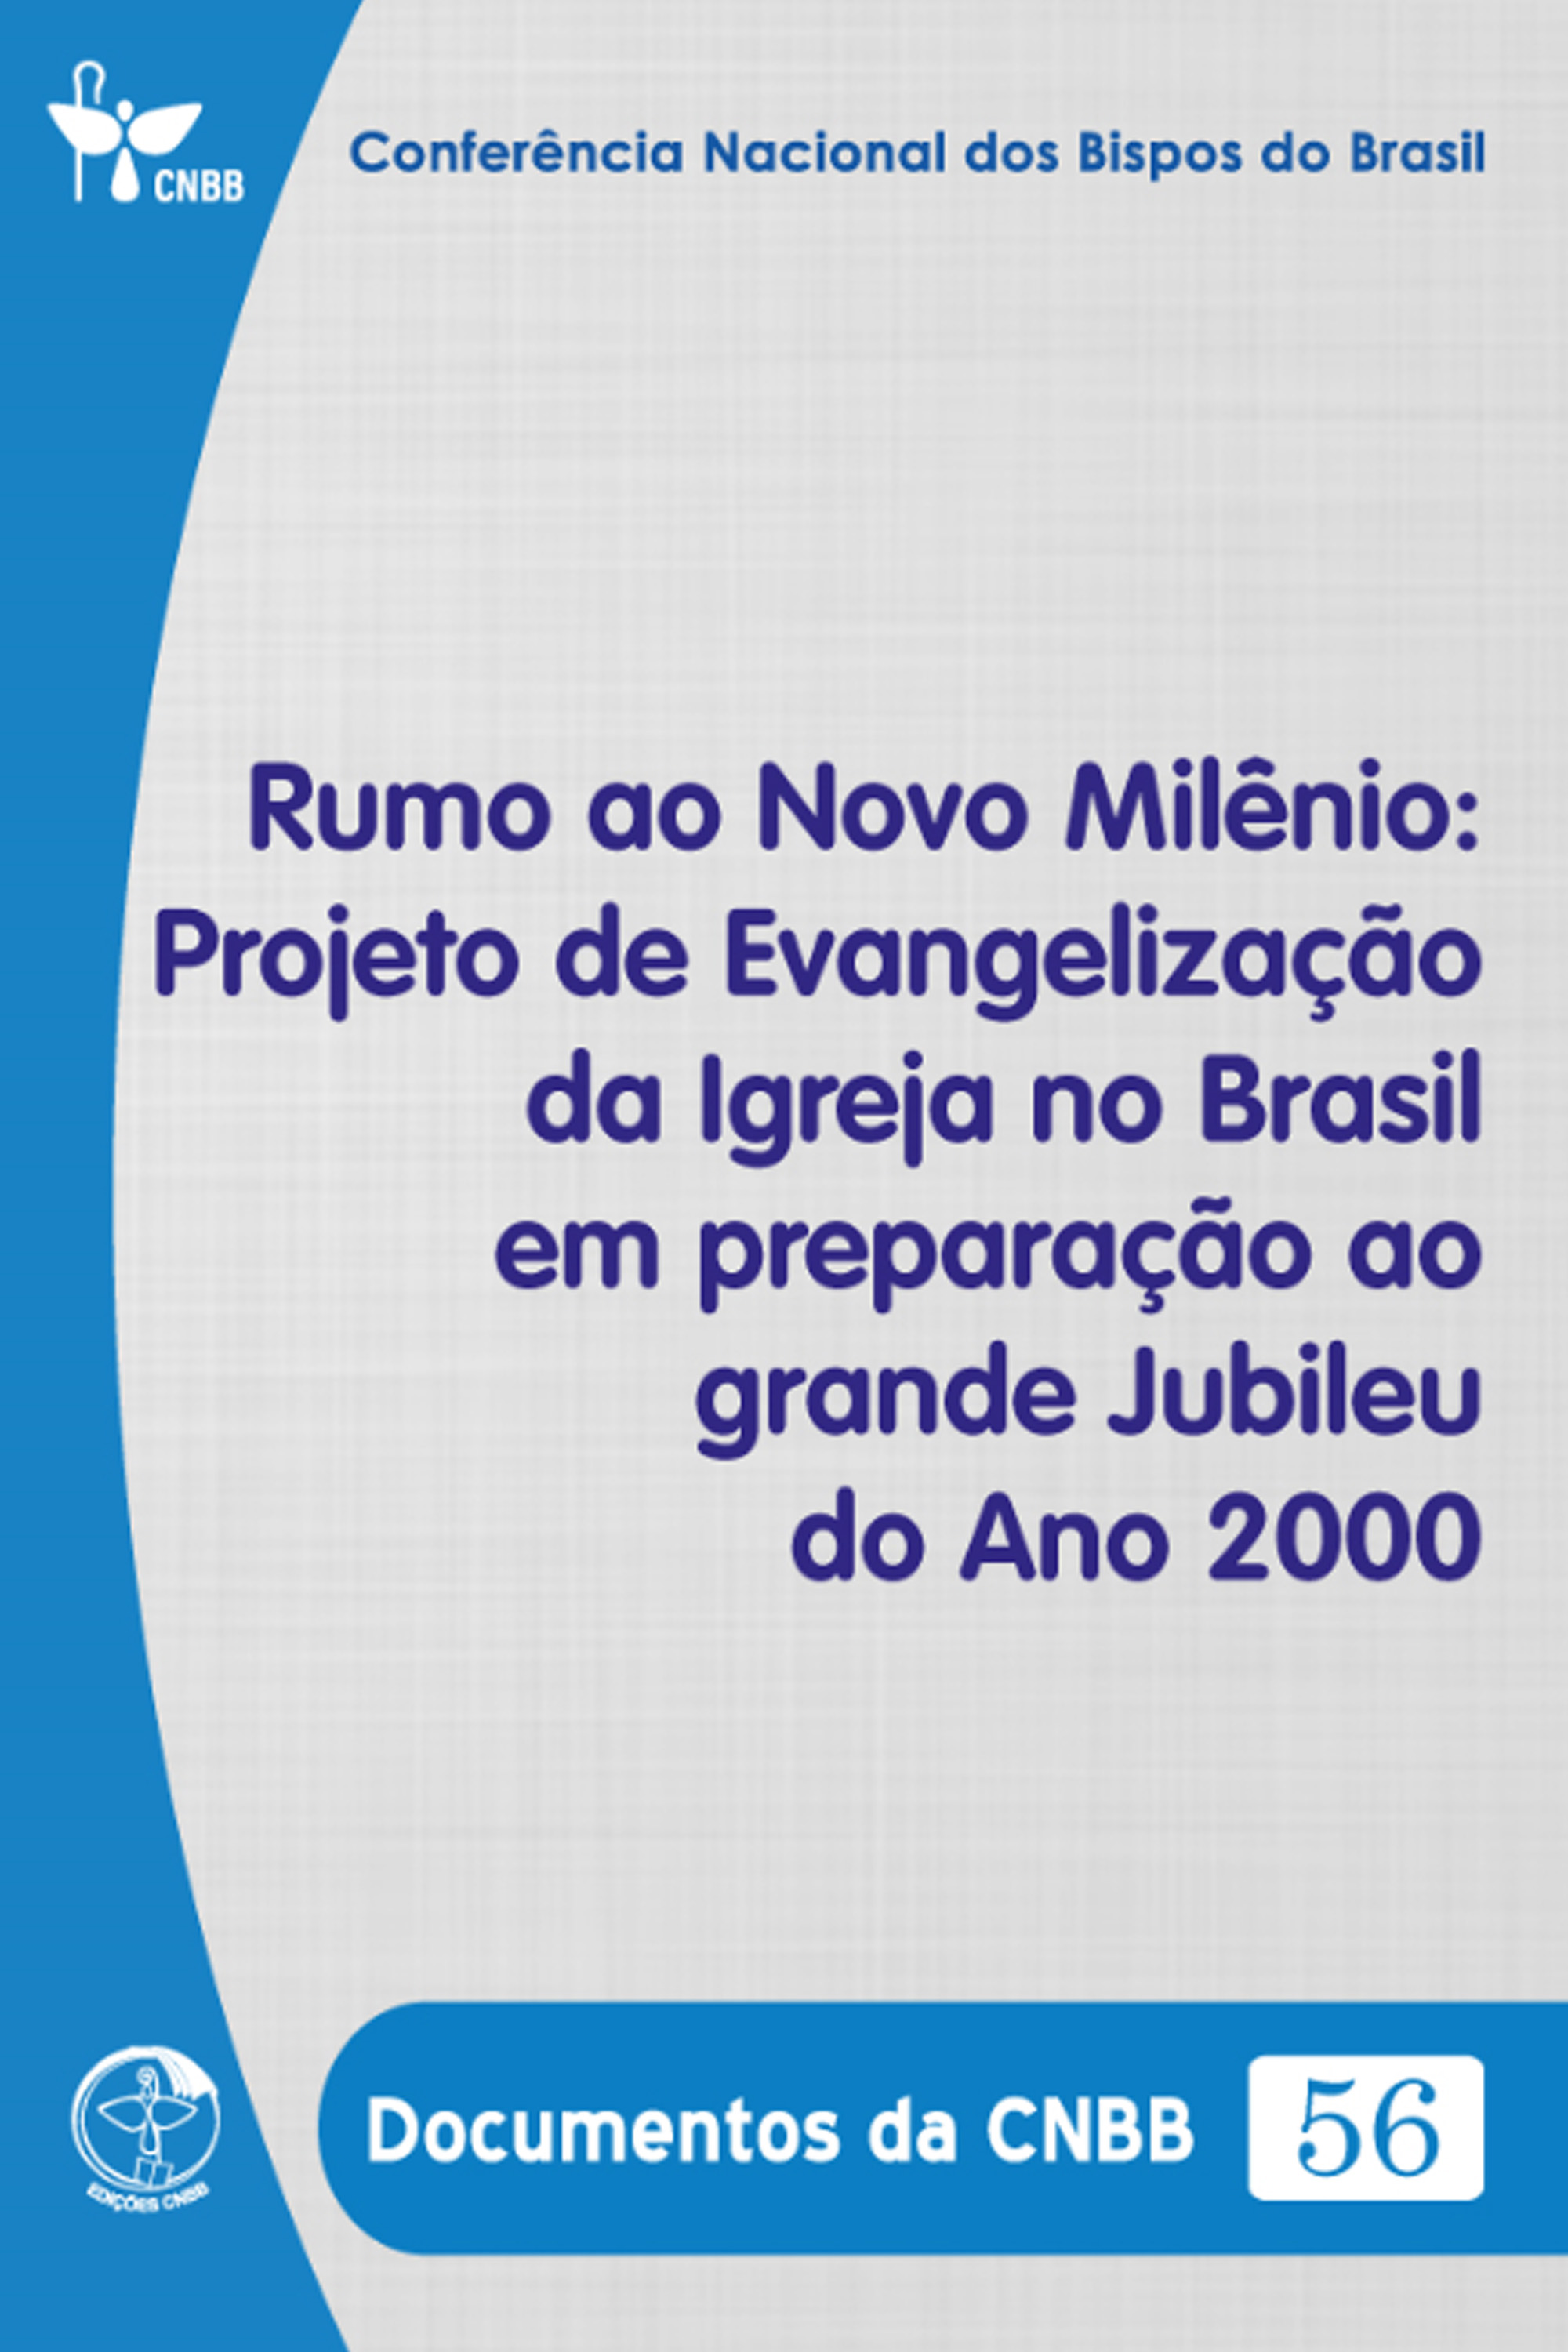 Rumo ao Novo Milênio: Projeto de Evangelização da Igreja no Brasil em Preparação ao Grande Jubileu do ano 2000 - Documentos da CNBB 56 - Digital